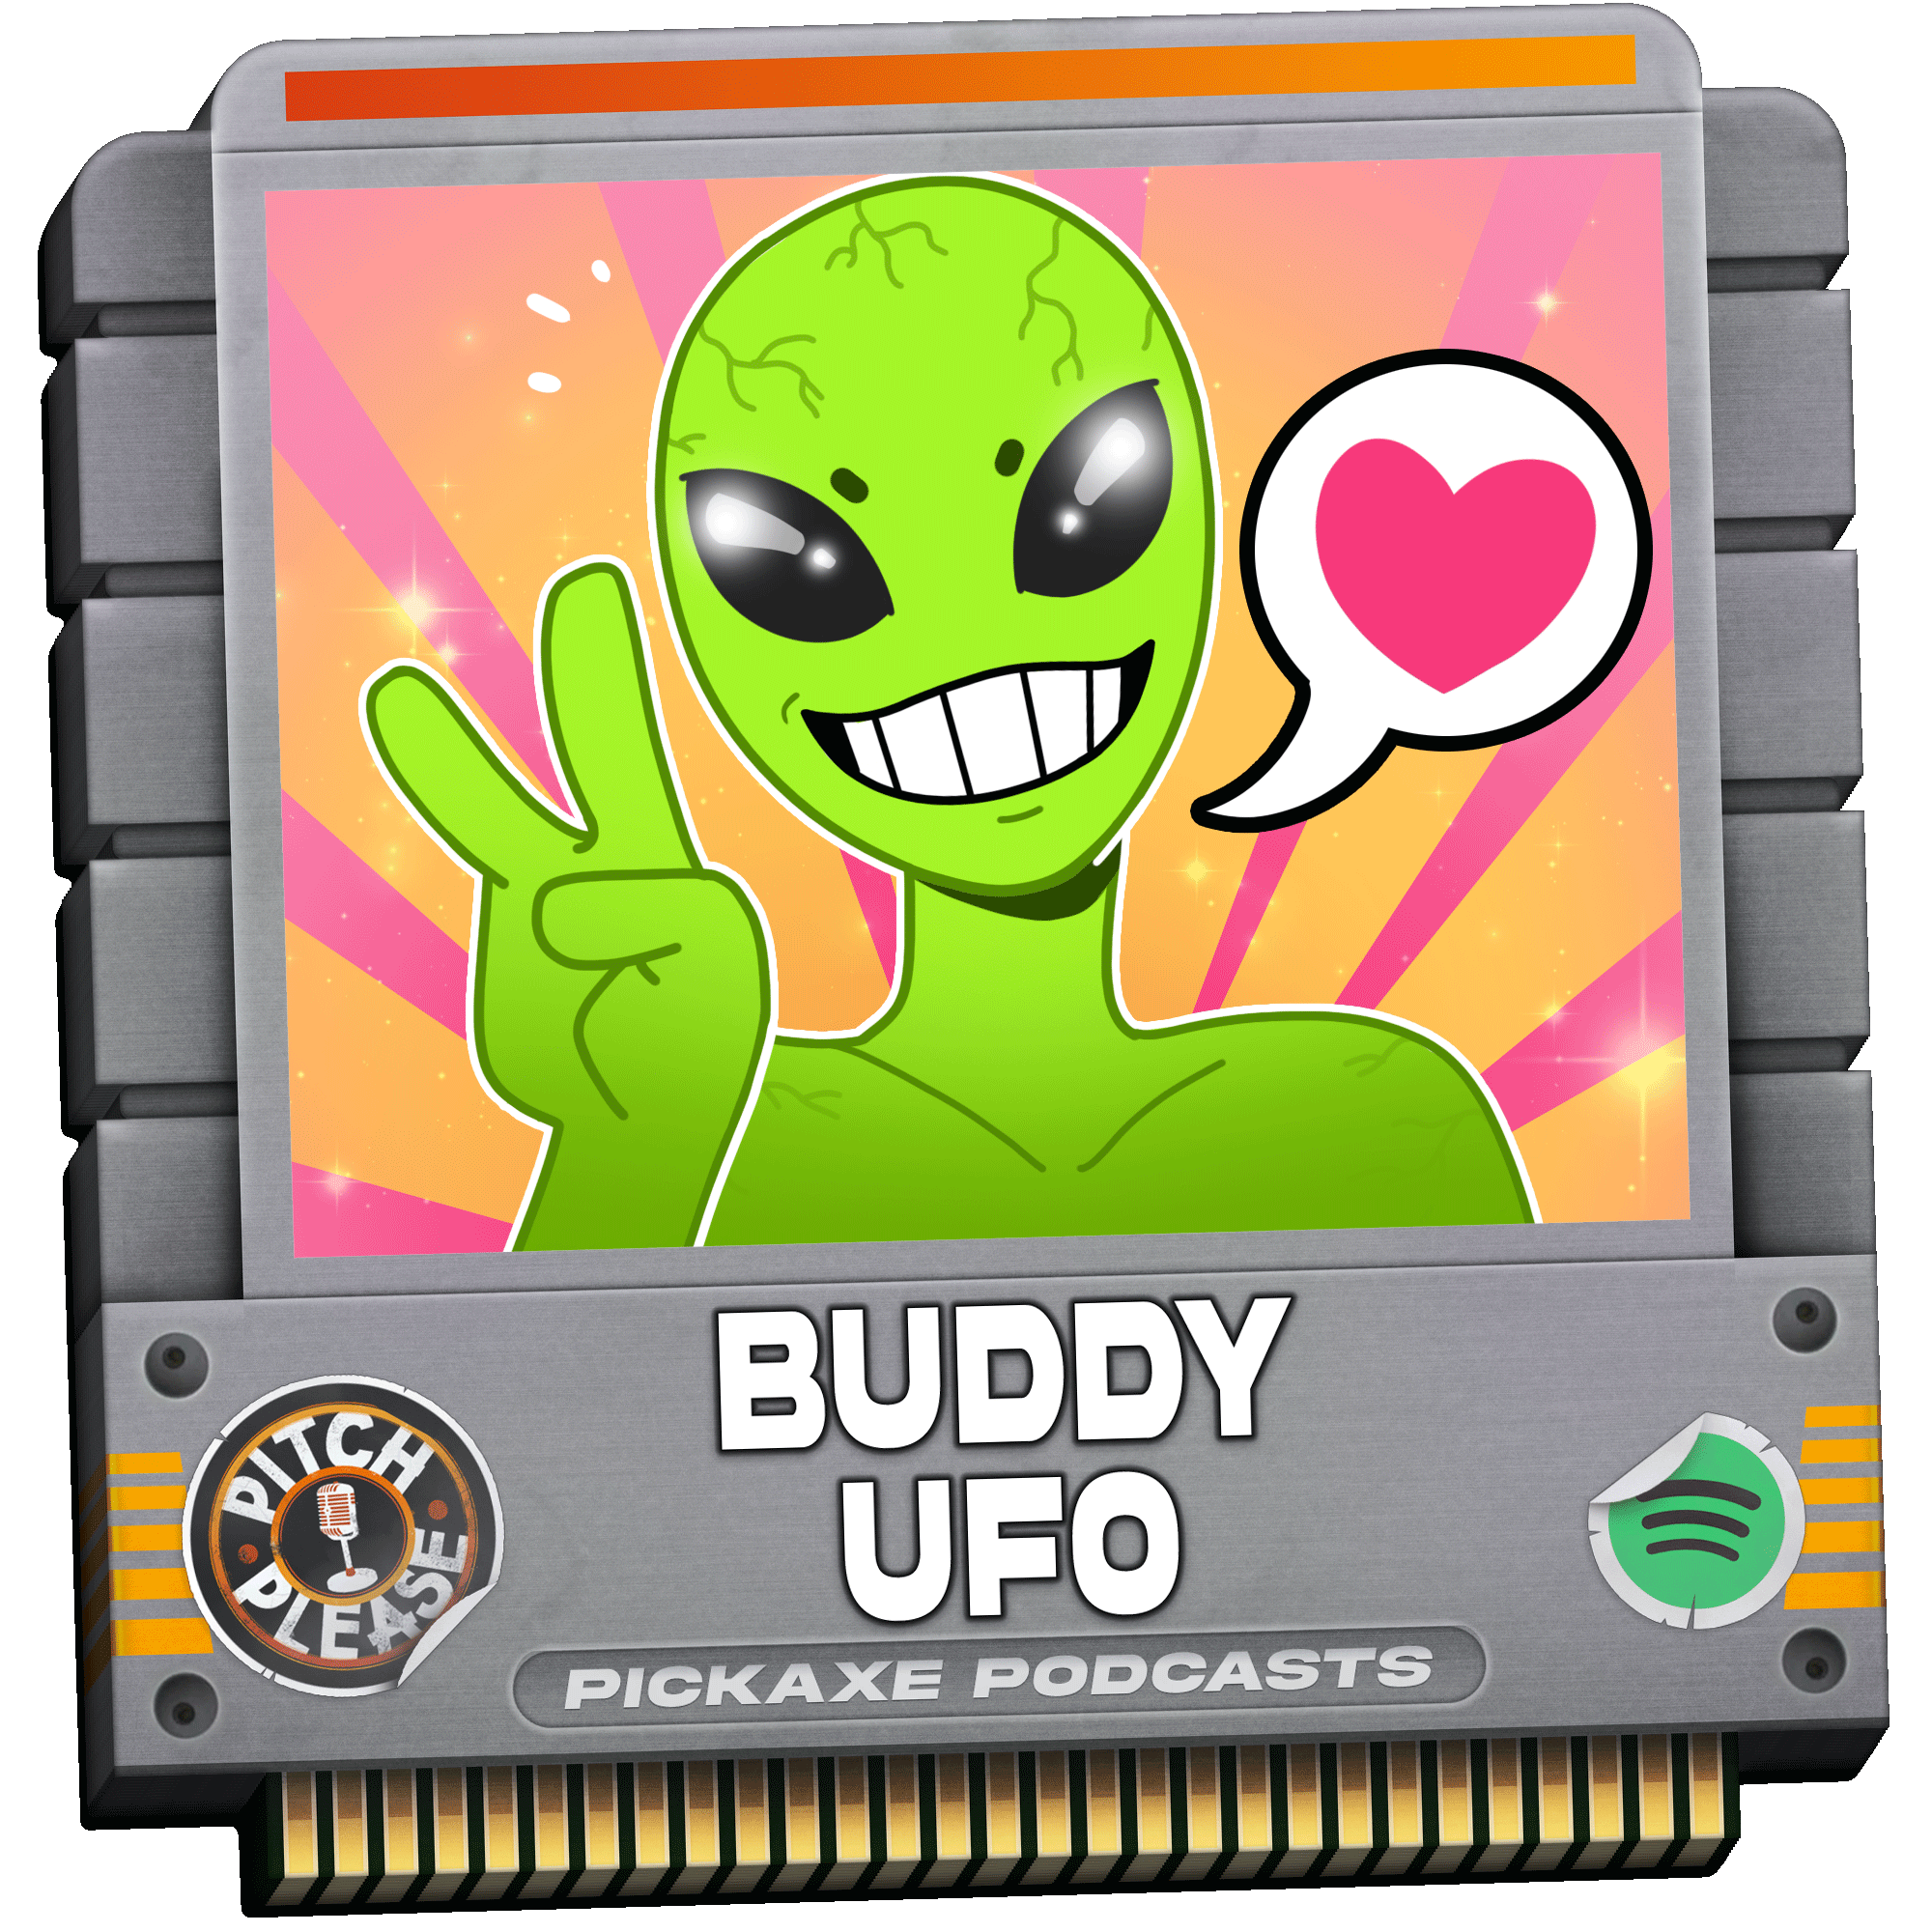 Pitch, Please - Buddy UFO, Human Hunter